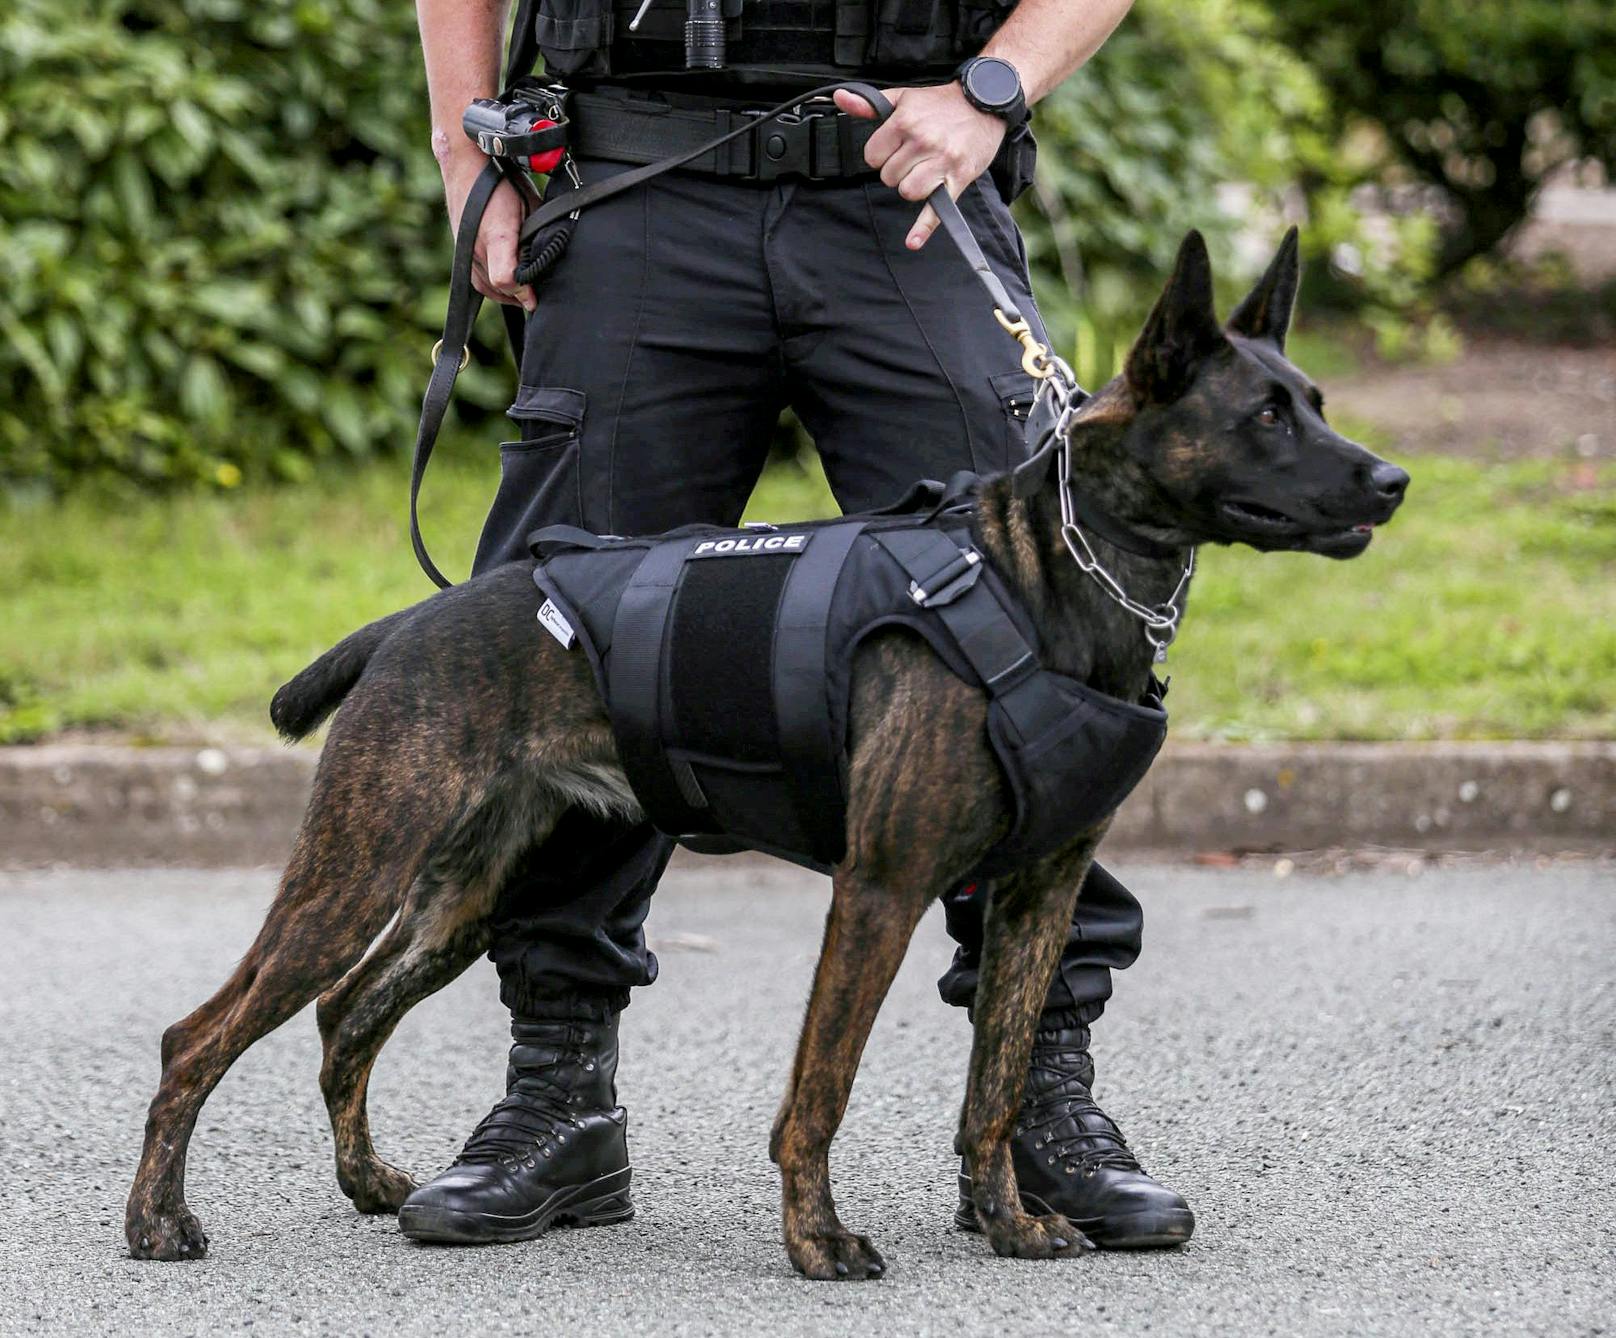 Bei uns in Österreich gibt es für Polizeihunde so ein Service leider noch nicht. 